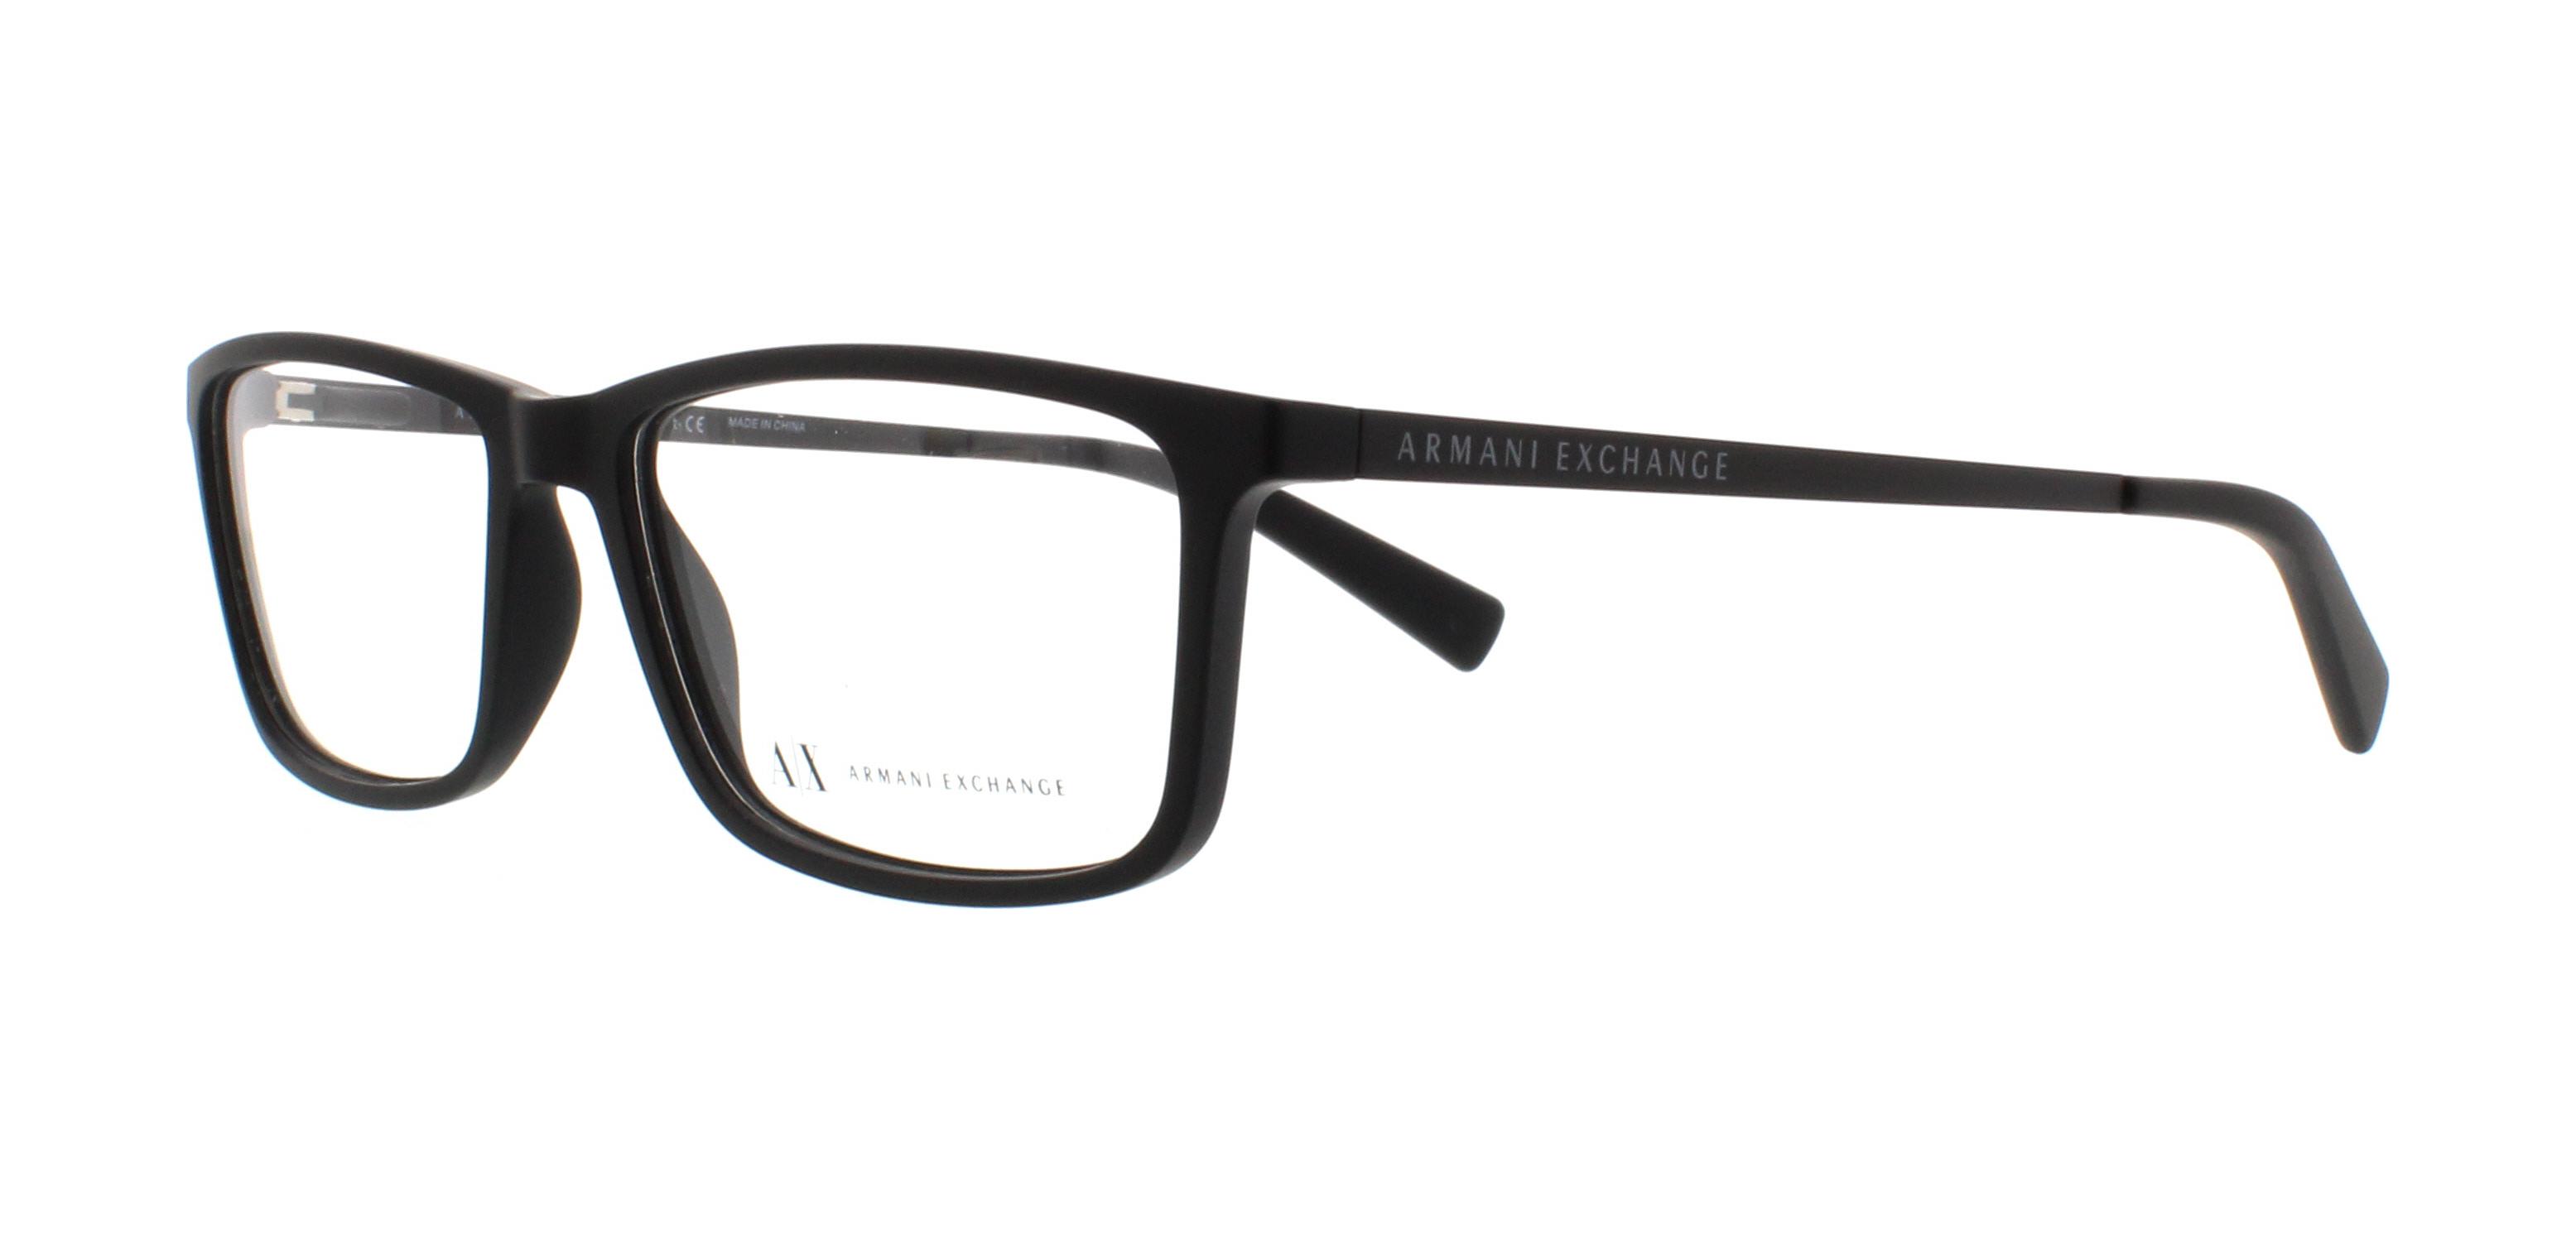 Designer Frames Outlet. Armani Exchange Eyeglasses AX3027